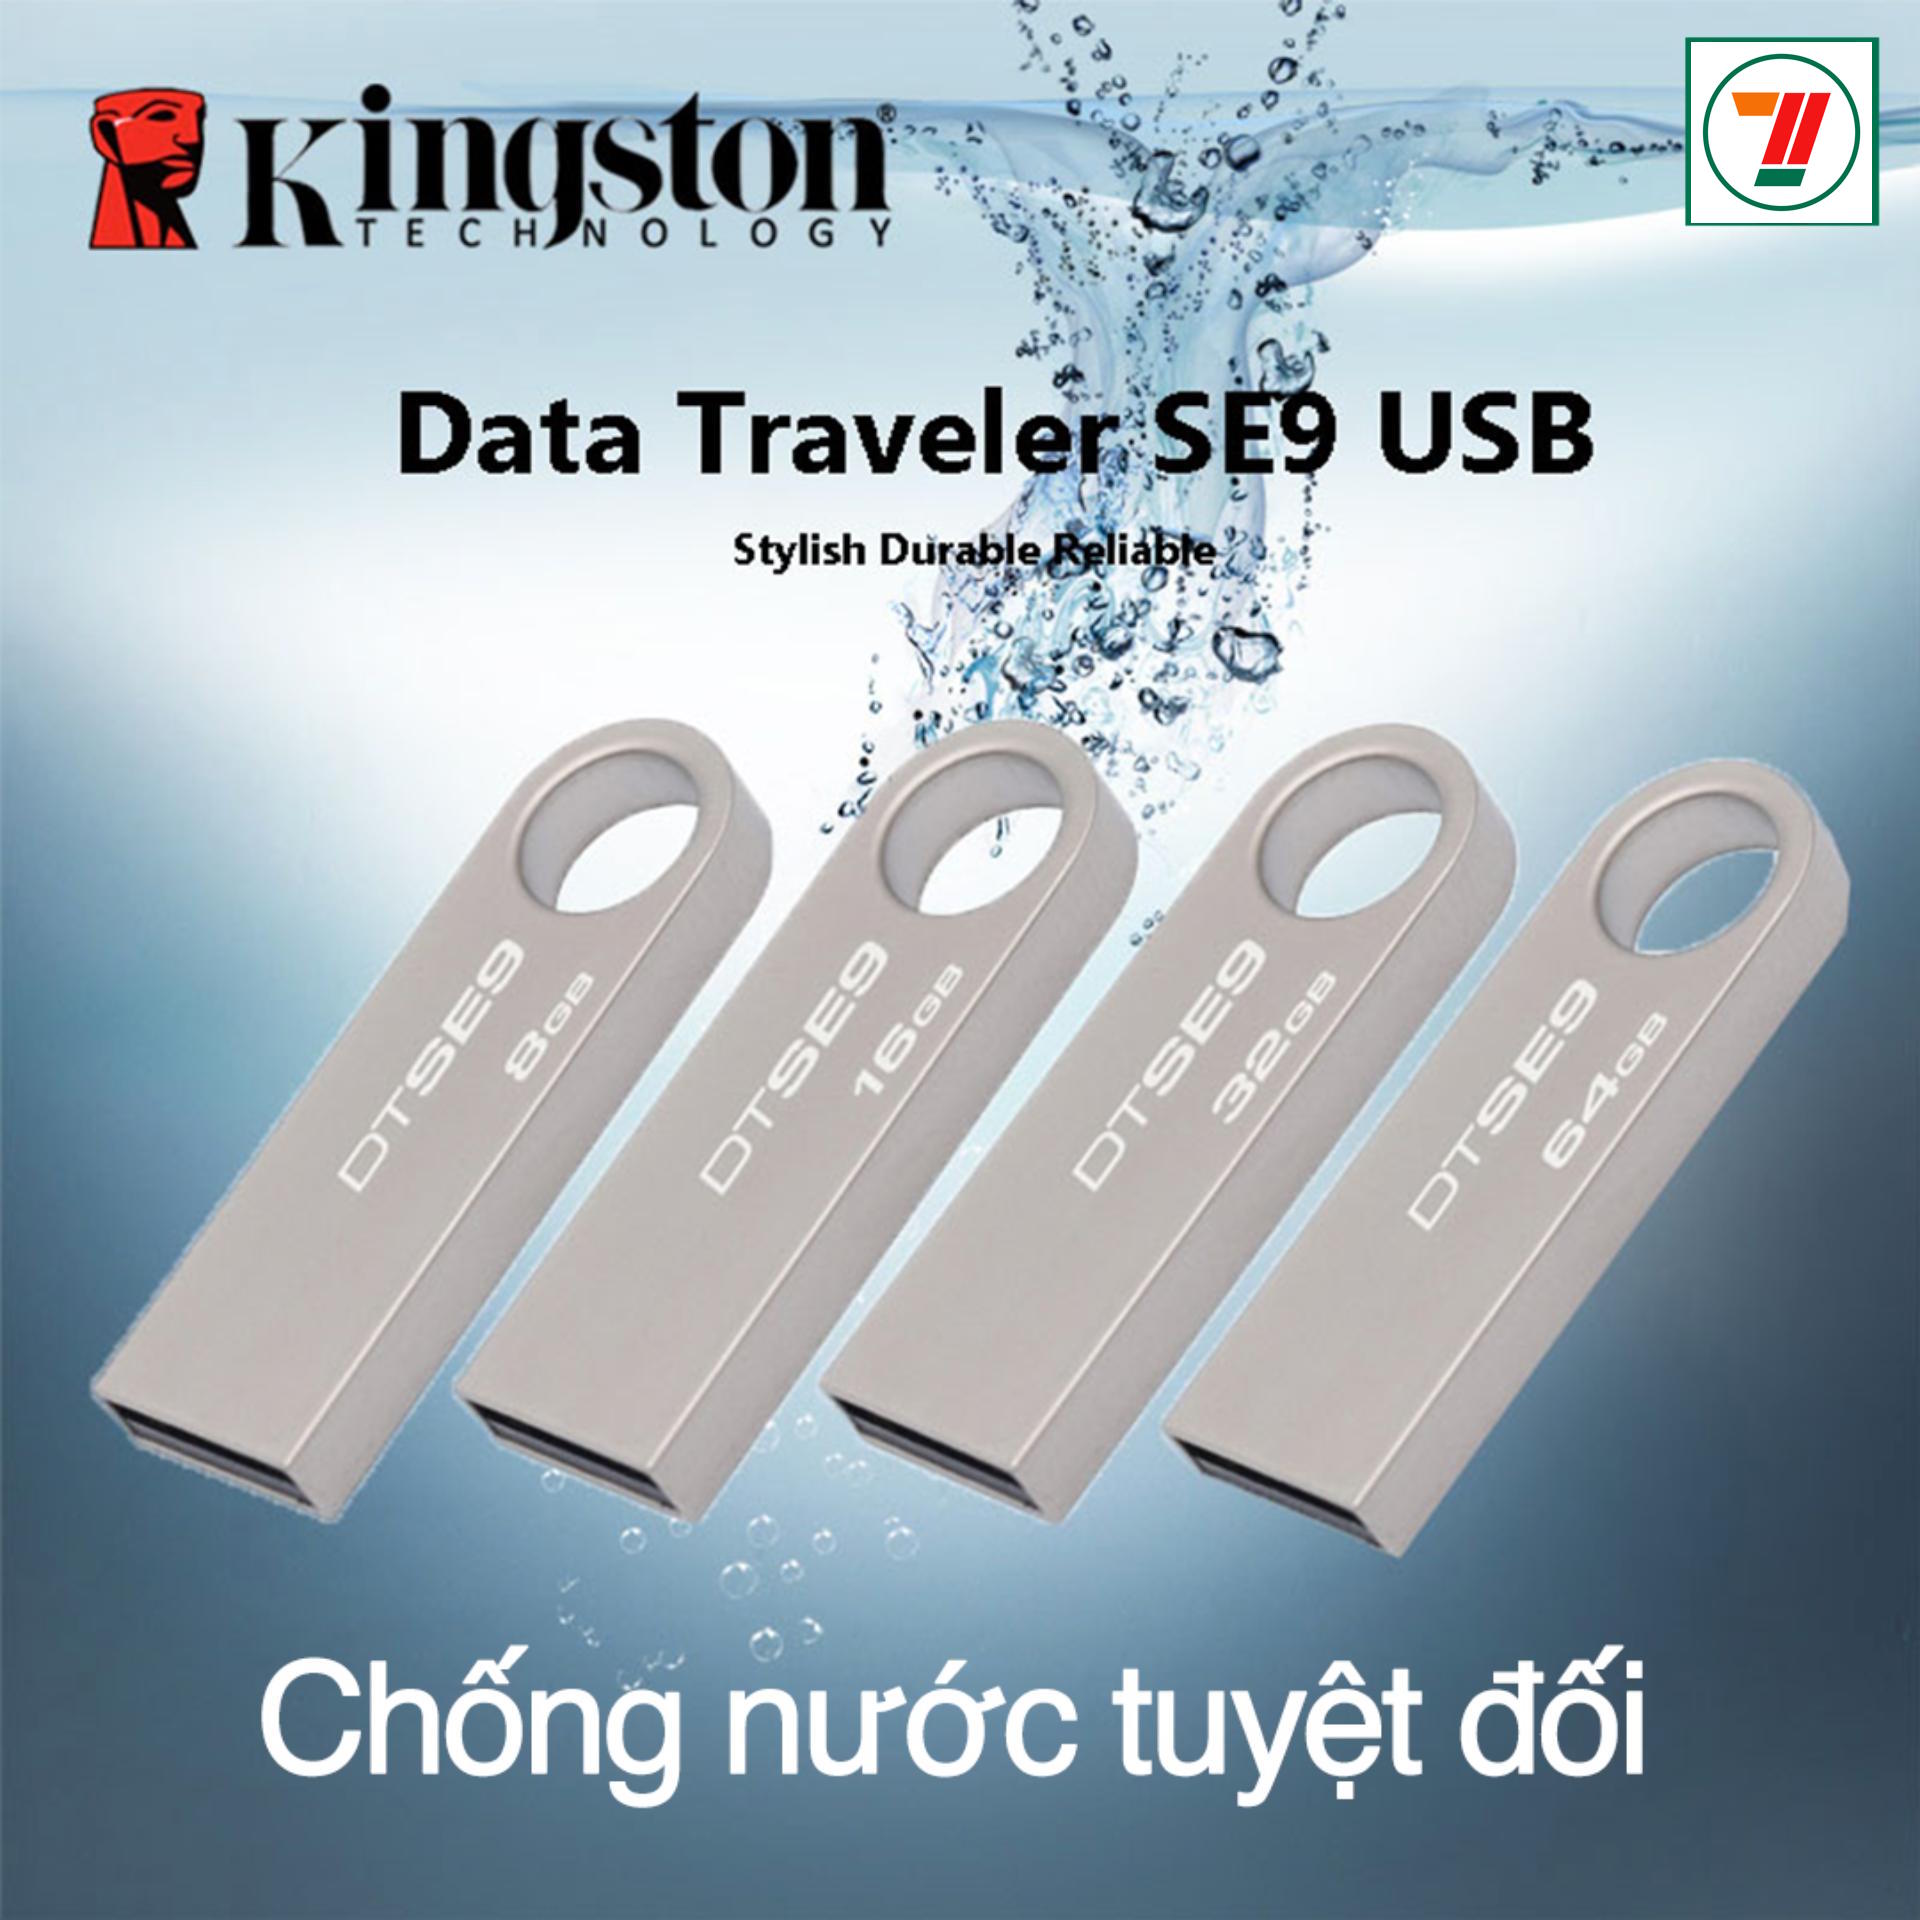 USB 32GB KINGSTON siêu nhỏ chống sốc chống nước, thiết kế vỏ nhôm nhỏ gọn, bảo hành 12 tháng lỗi...